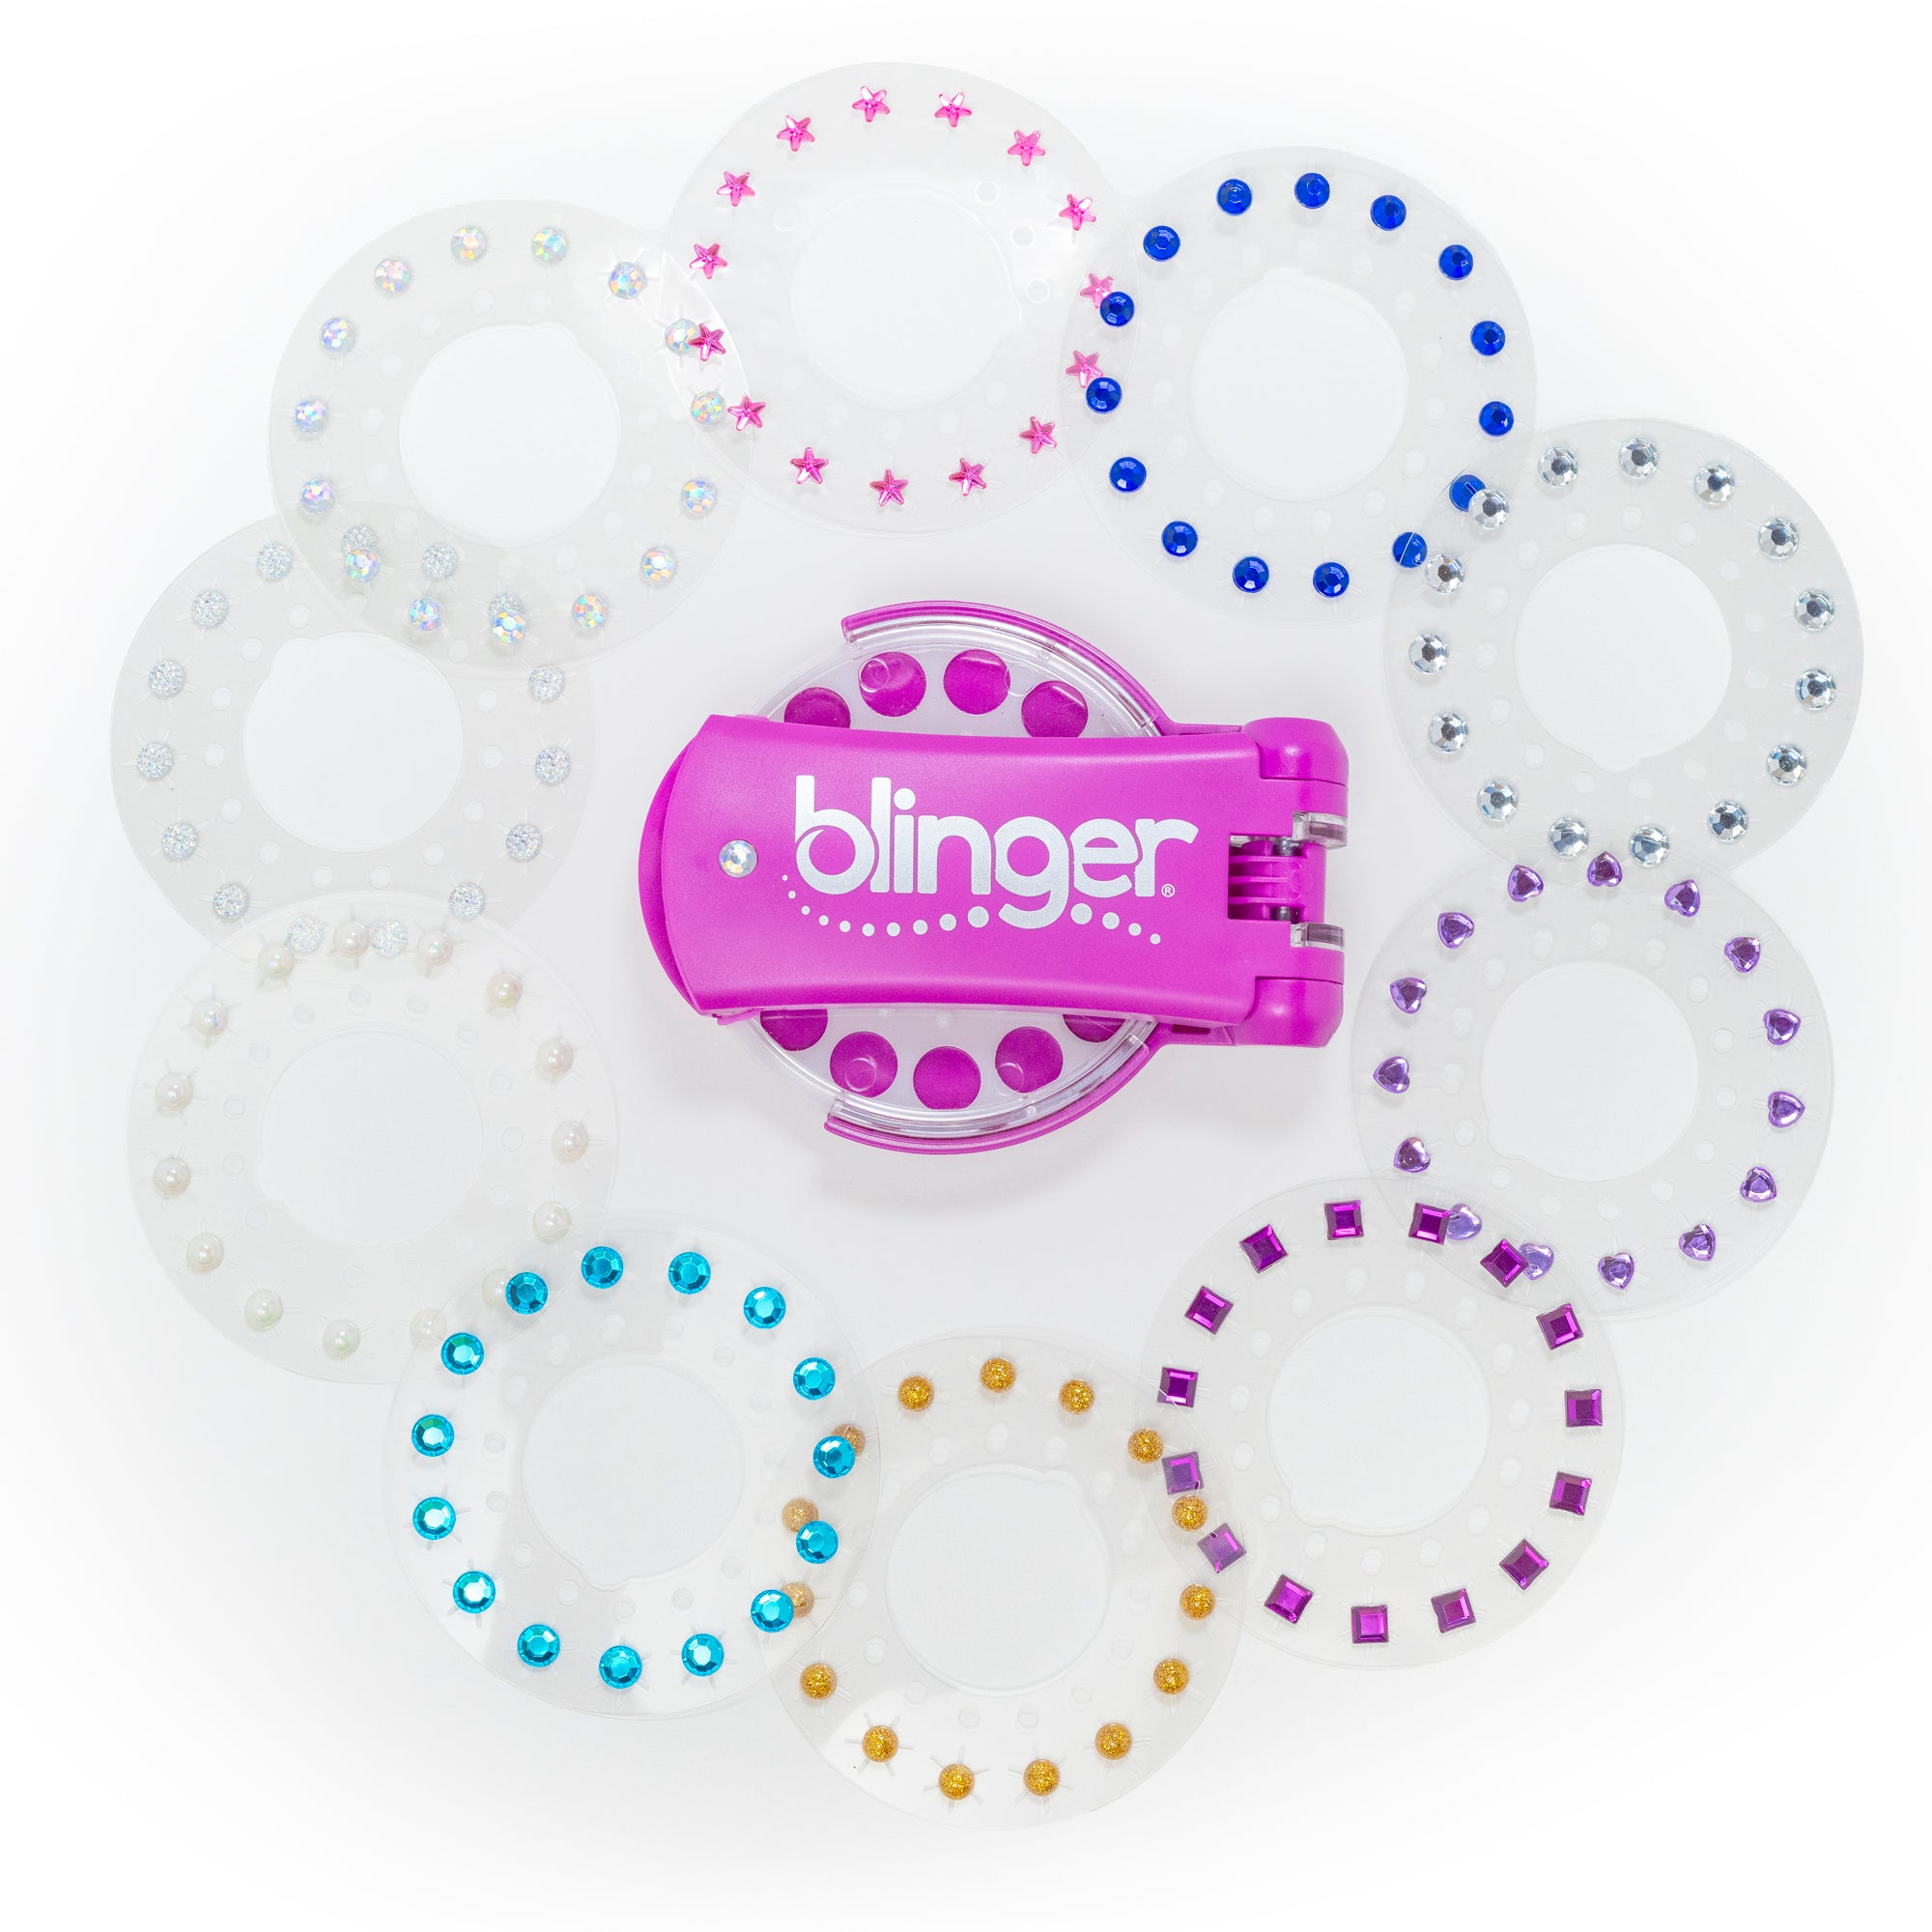 blinger® Radiance Collection Starter Kit - blinger Gem Stamper (Magenta) + 150 Colorful Gems